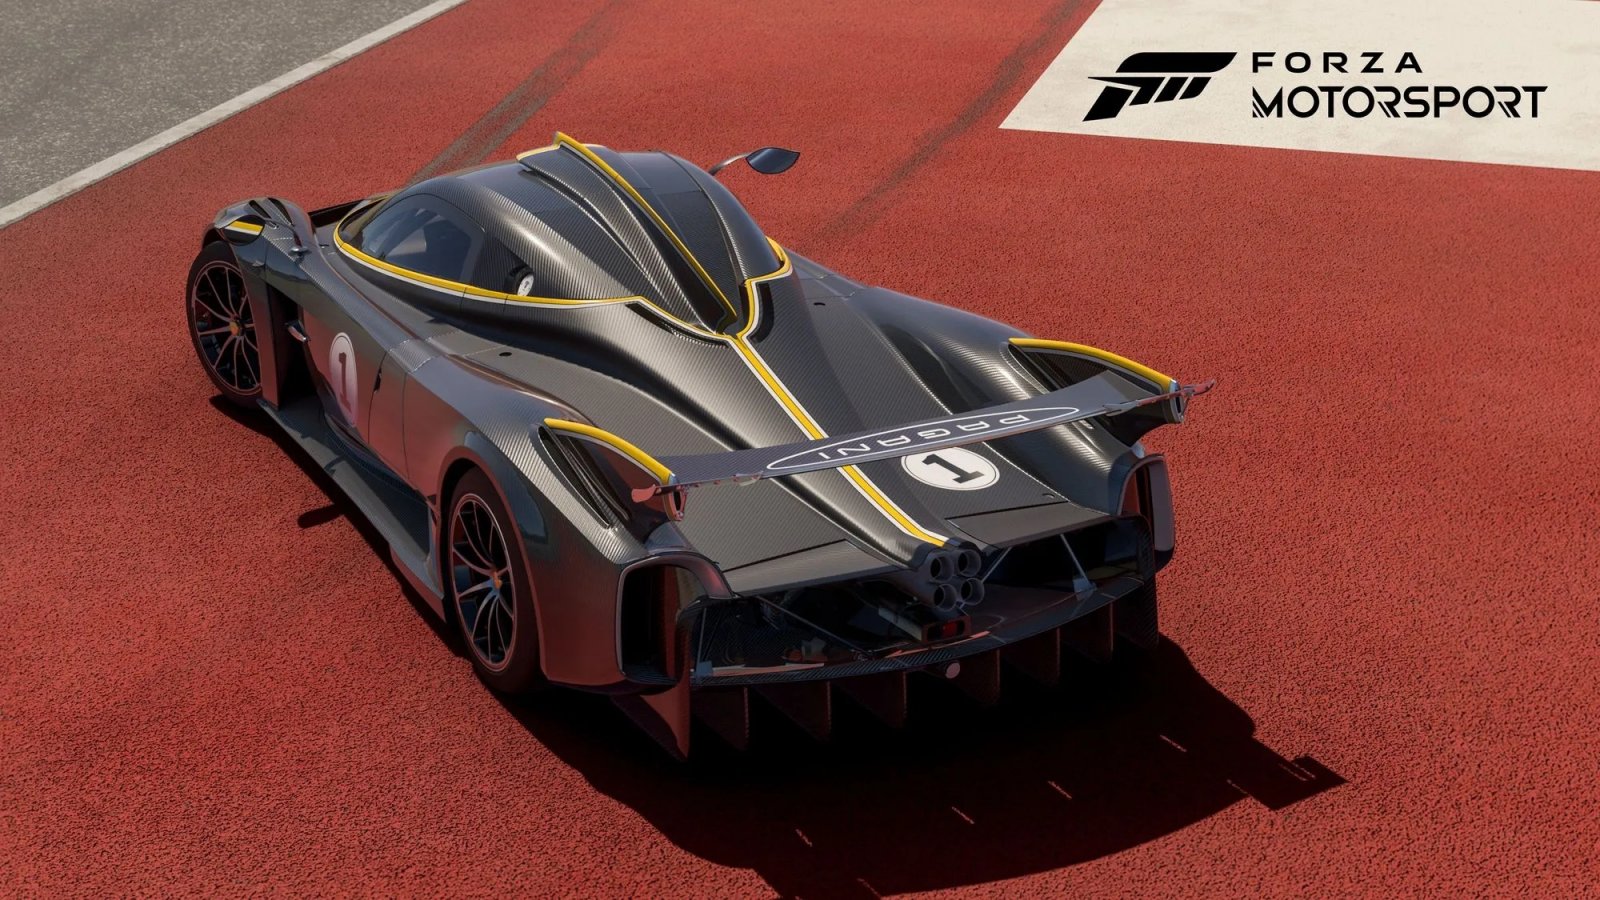 Forza Motorsport: Update 3 disponibile, con il circuito di Hockenheim, nuove auto e altro